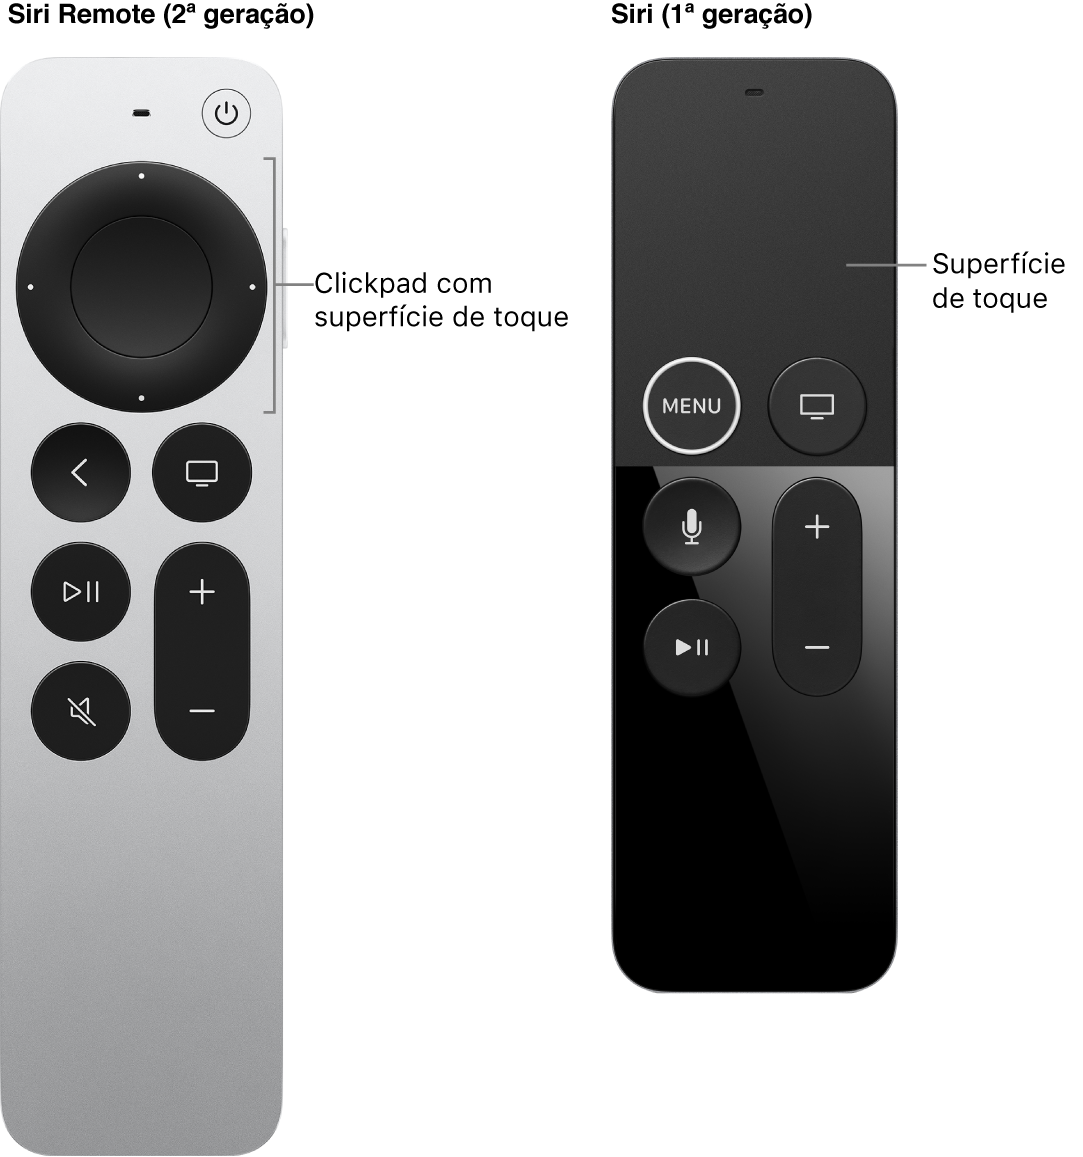 O Siri Remote (2ª geração) com clickpad e o Siri Remote (1ª geração) com superfície de toque